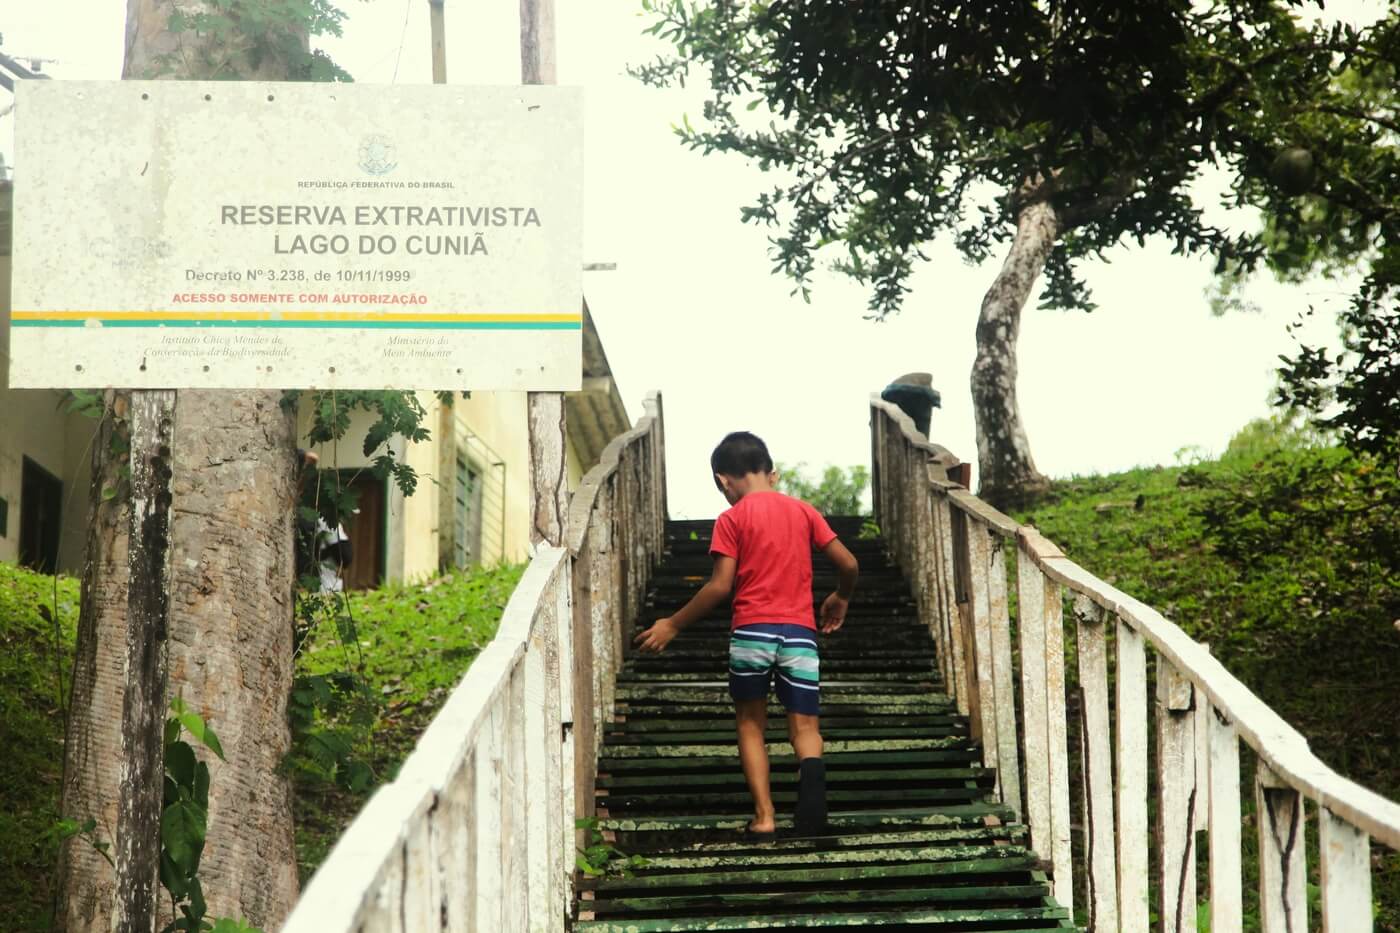 Entrada da Resex Cuniã com placa de identificação do local à esquerda, escada ao centro com criança subindo os degraus e vegetação ao redor